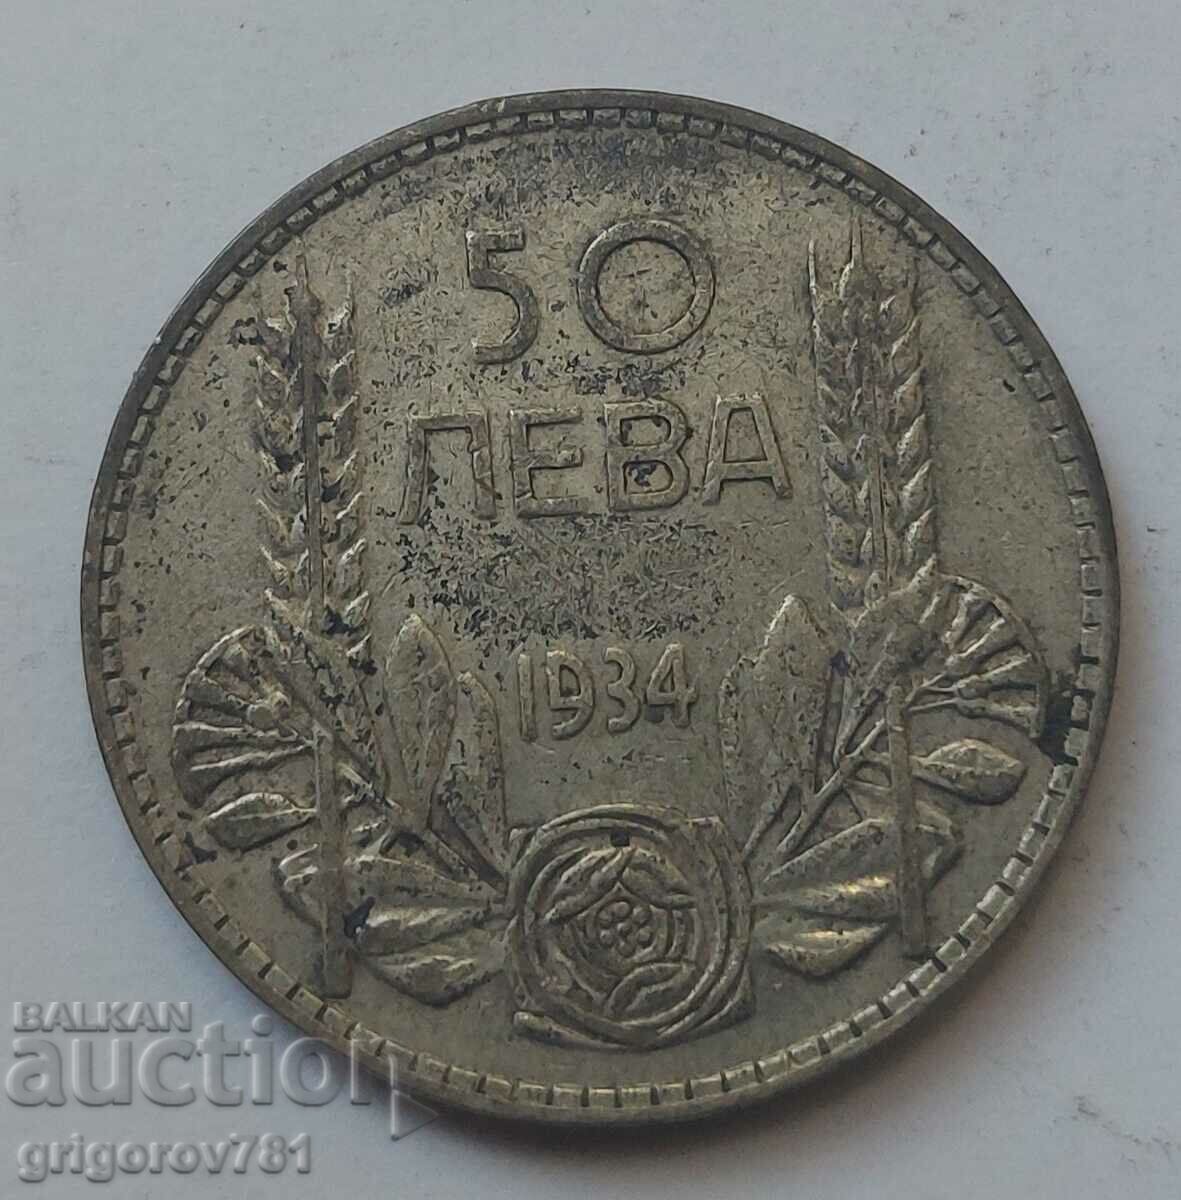 Ασήμι 50 λέβα Βουλγαρία 1934 - ασημένιο νόμισμα #17